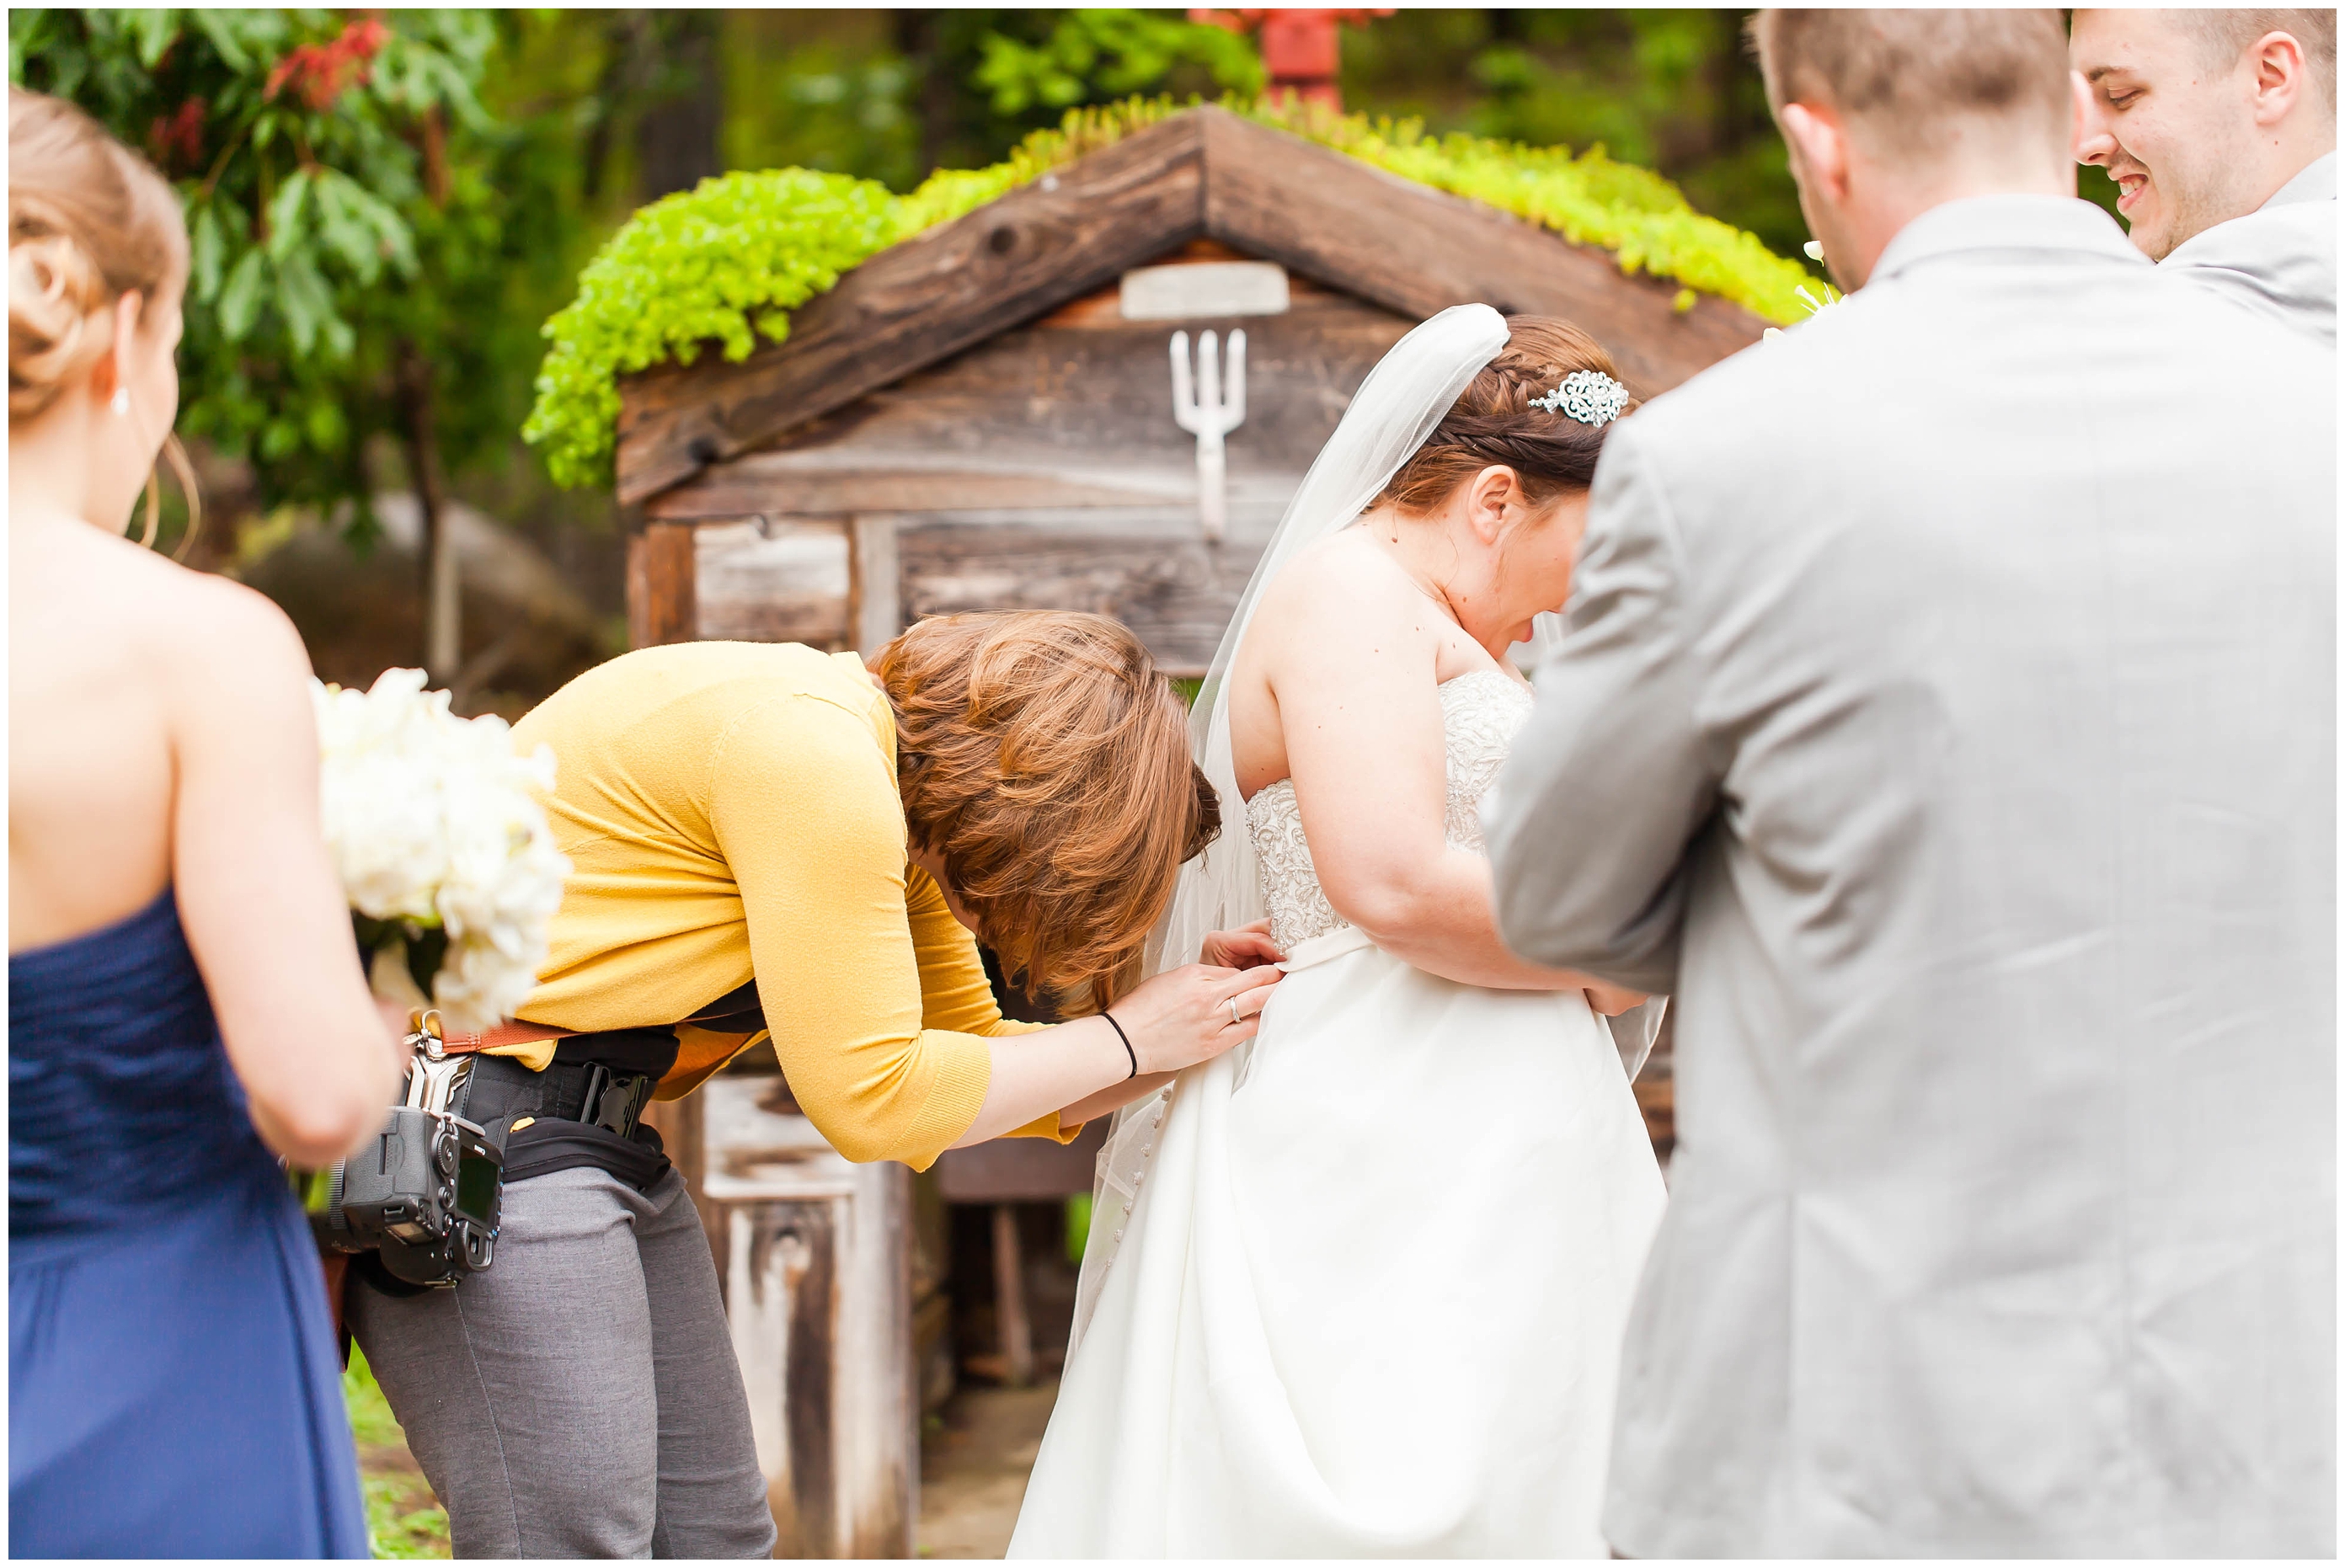 Canton Wedding,Hotel Weddings,Ohio Wedding Photographer,Photographer Akron Ohio,